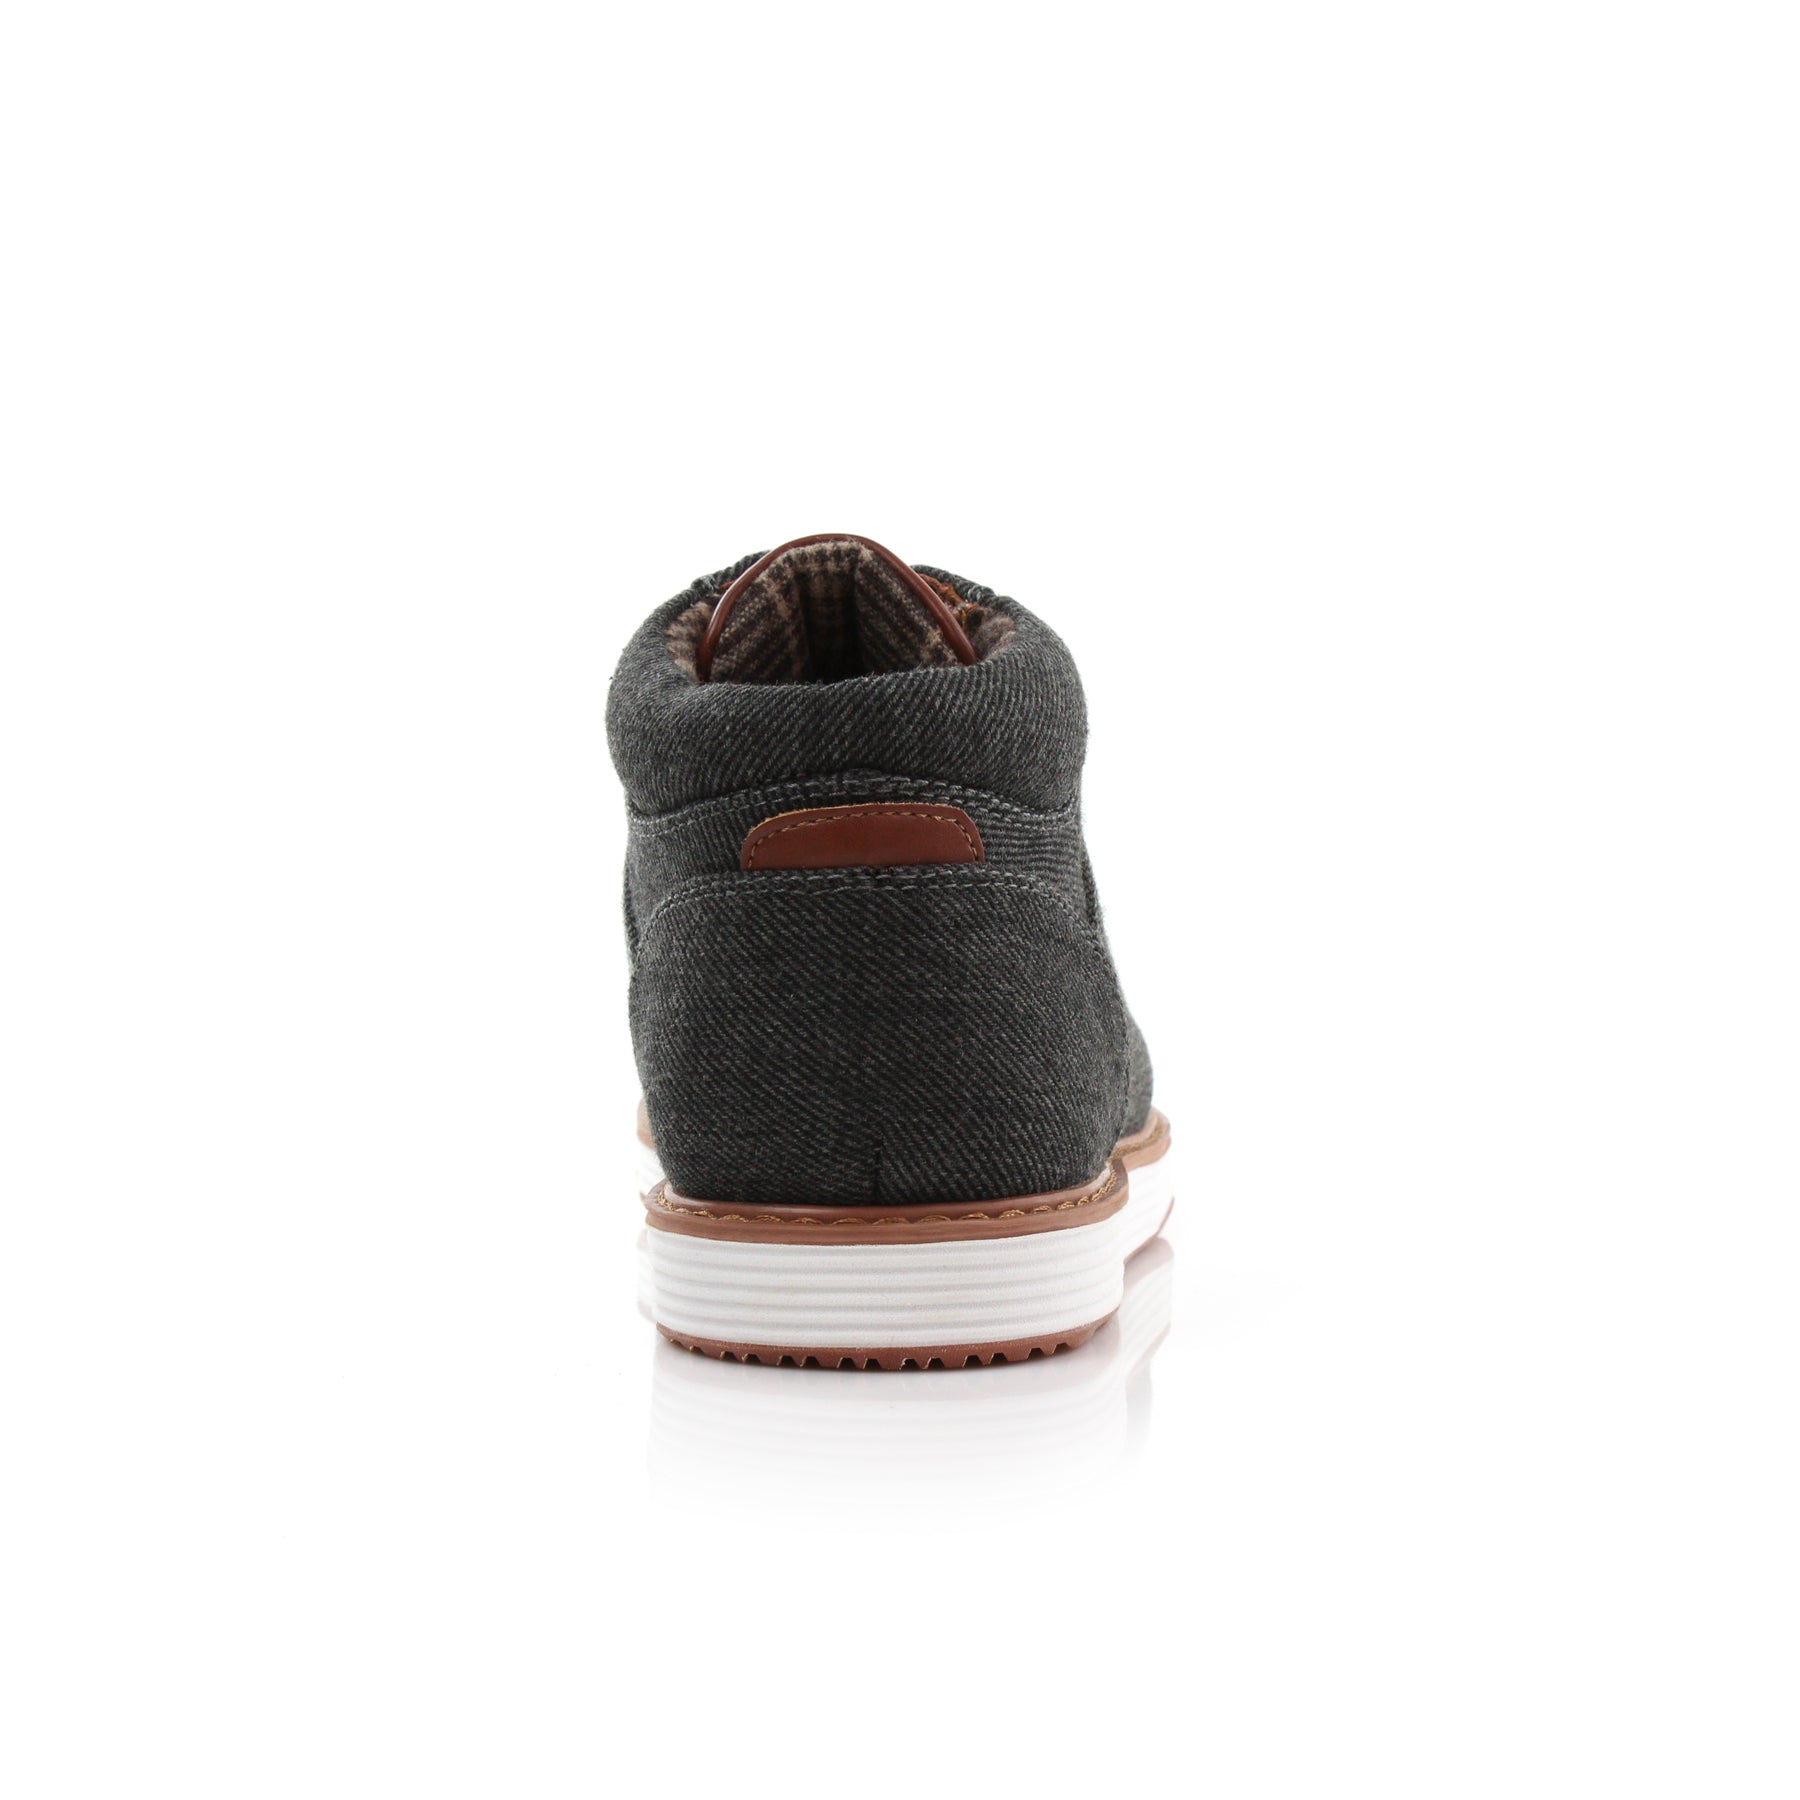 Denim Sneakers | Jax by Ferro Aldo | Conal Footwear | Back Angle View